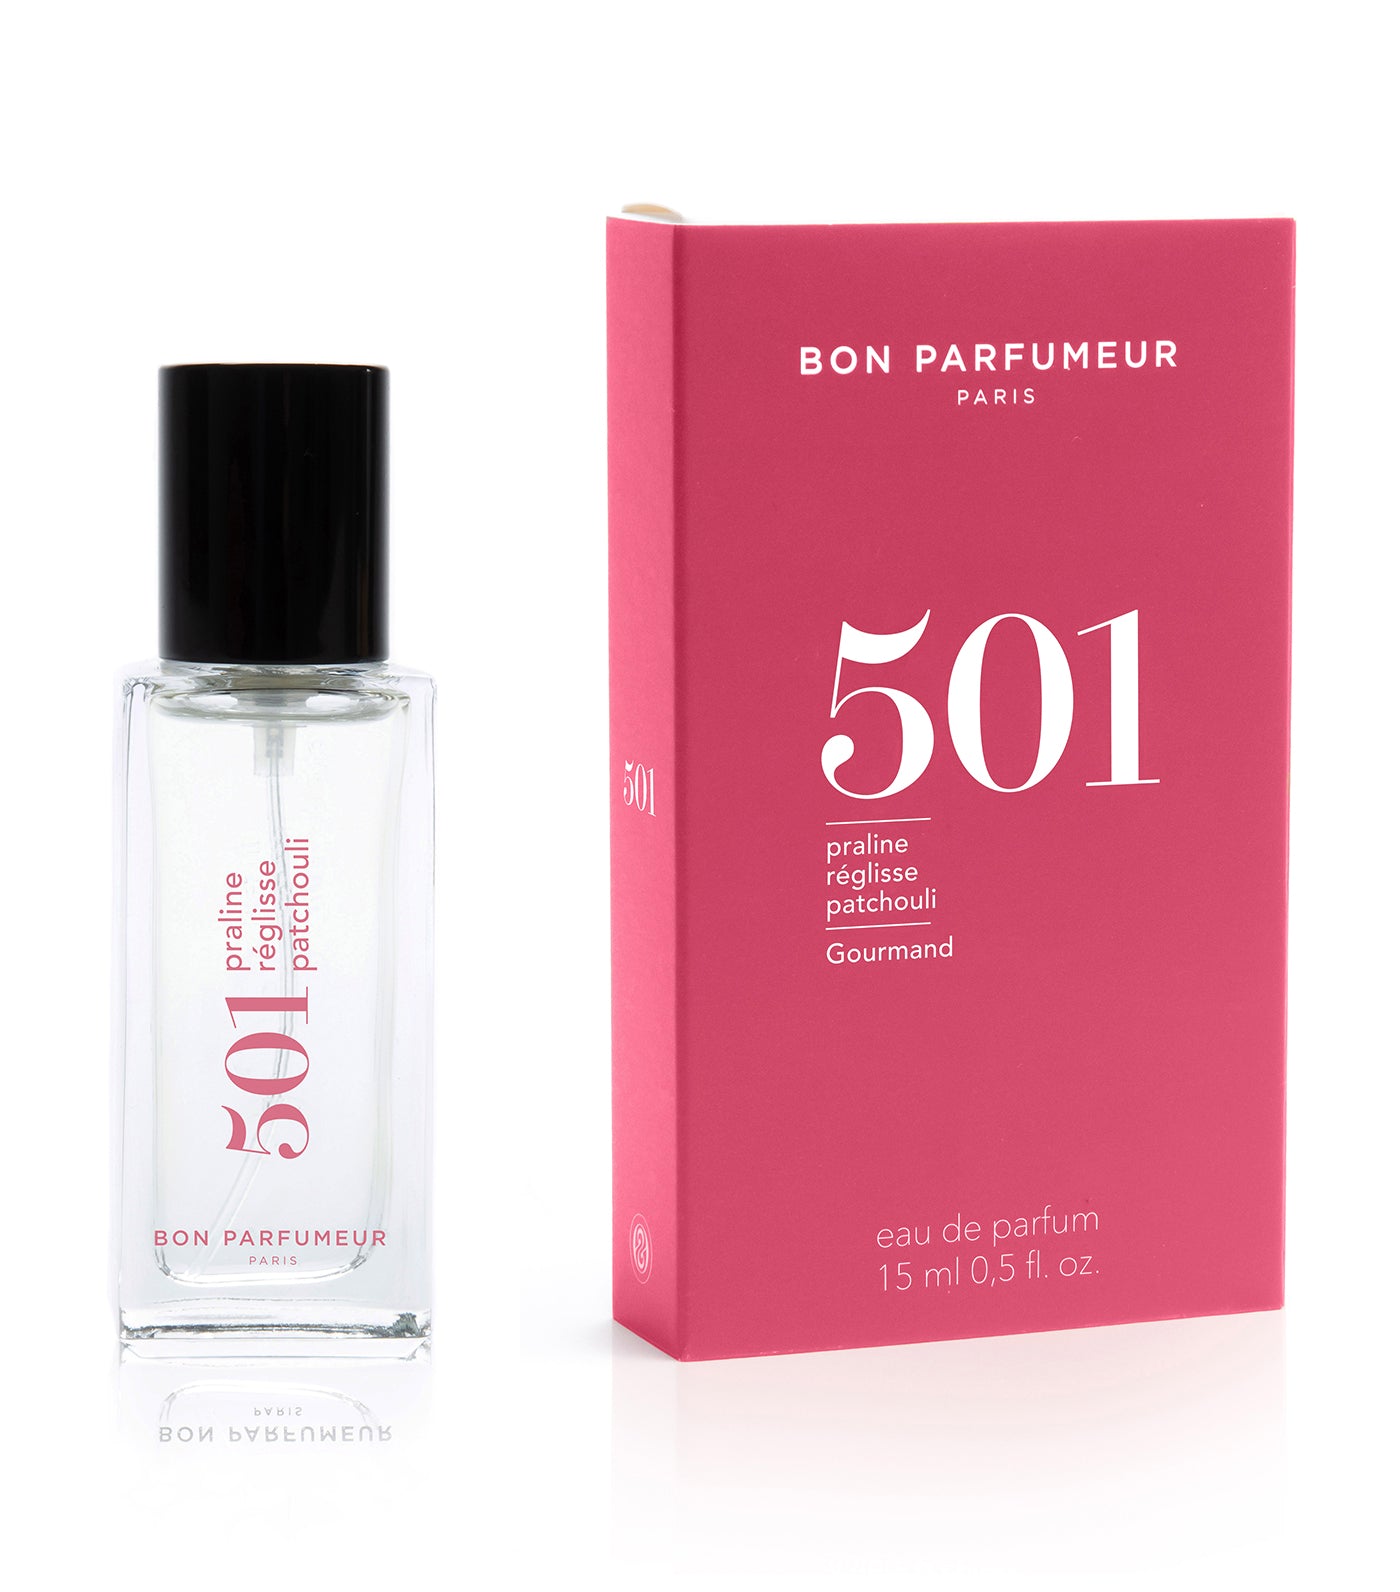 Eau de parfum 501 : praline, licorice and patchouli